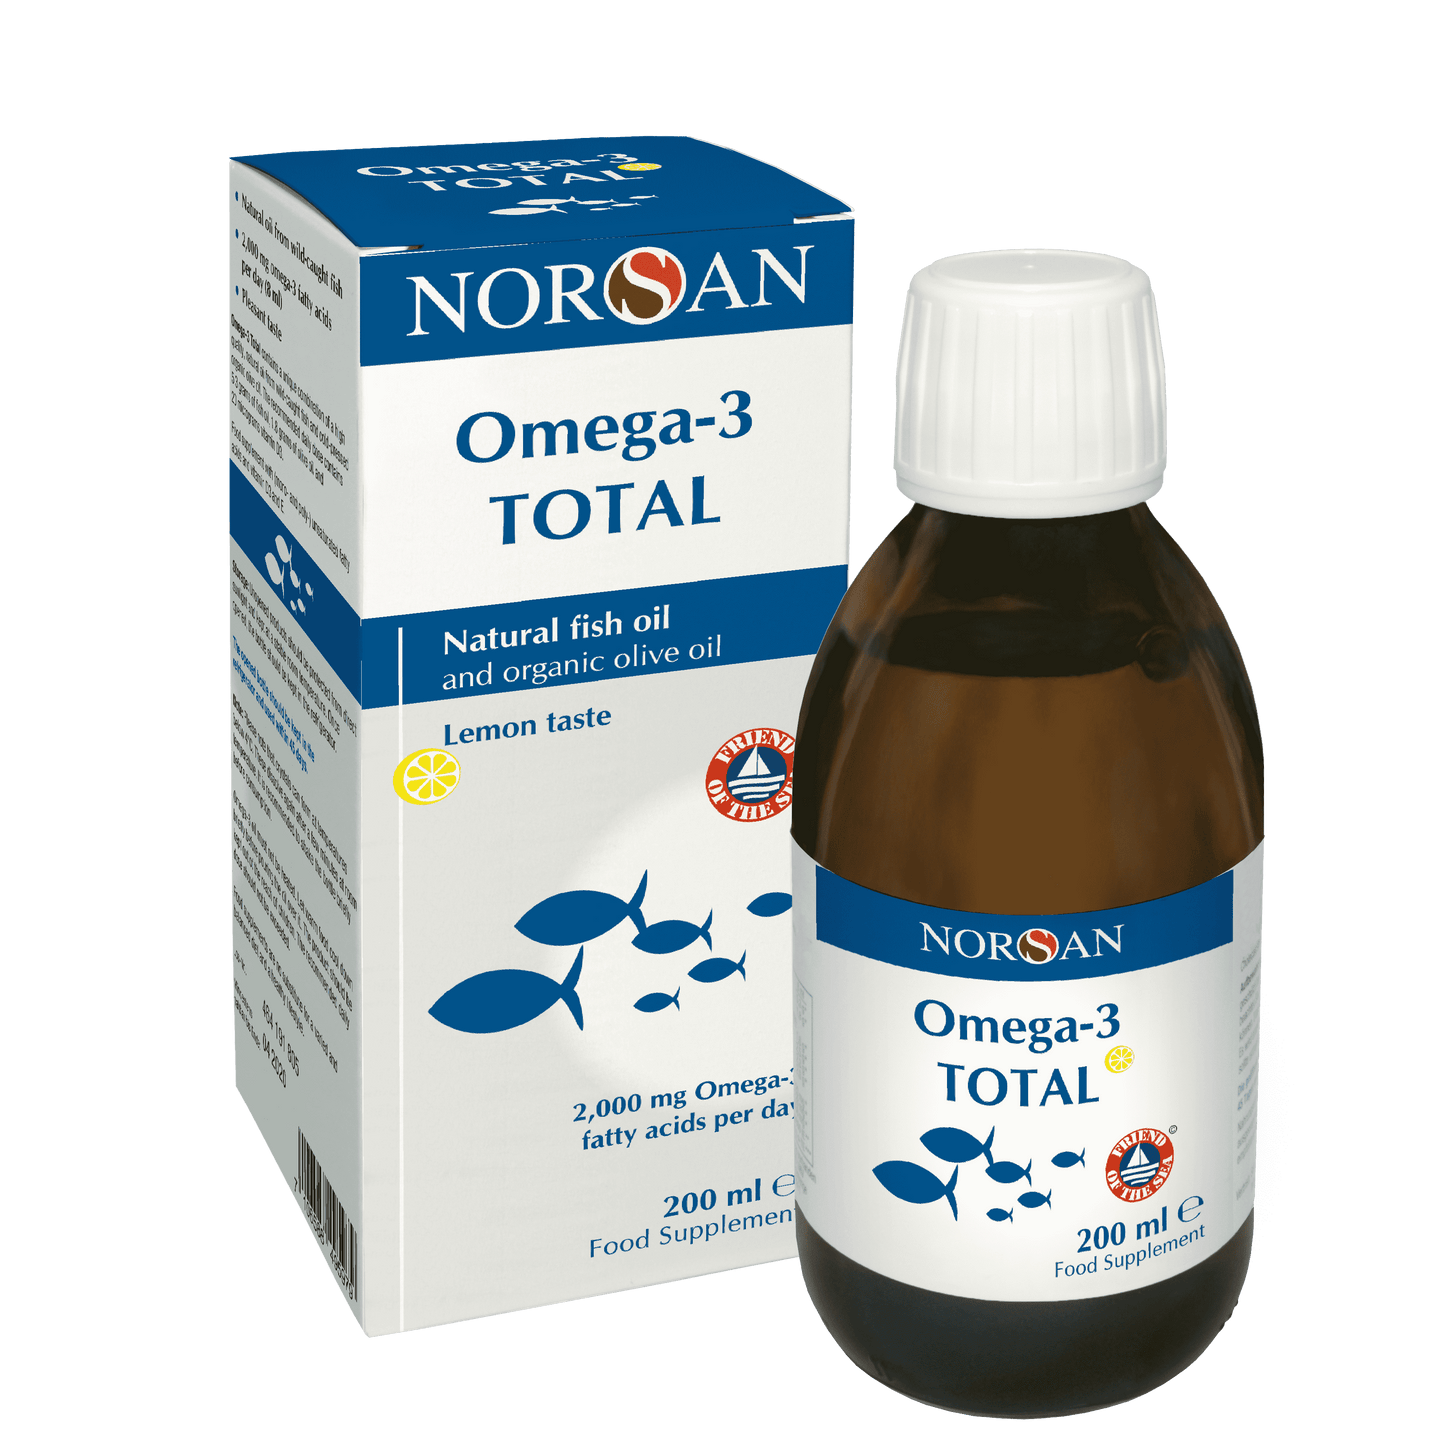 NORSAN Omega-3 Total Oil